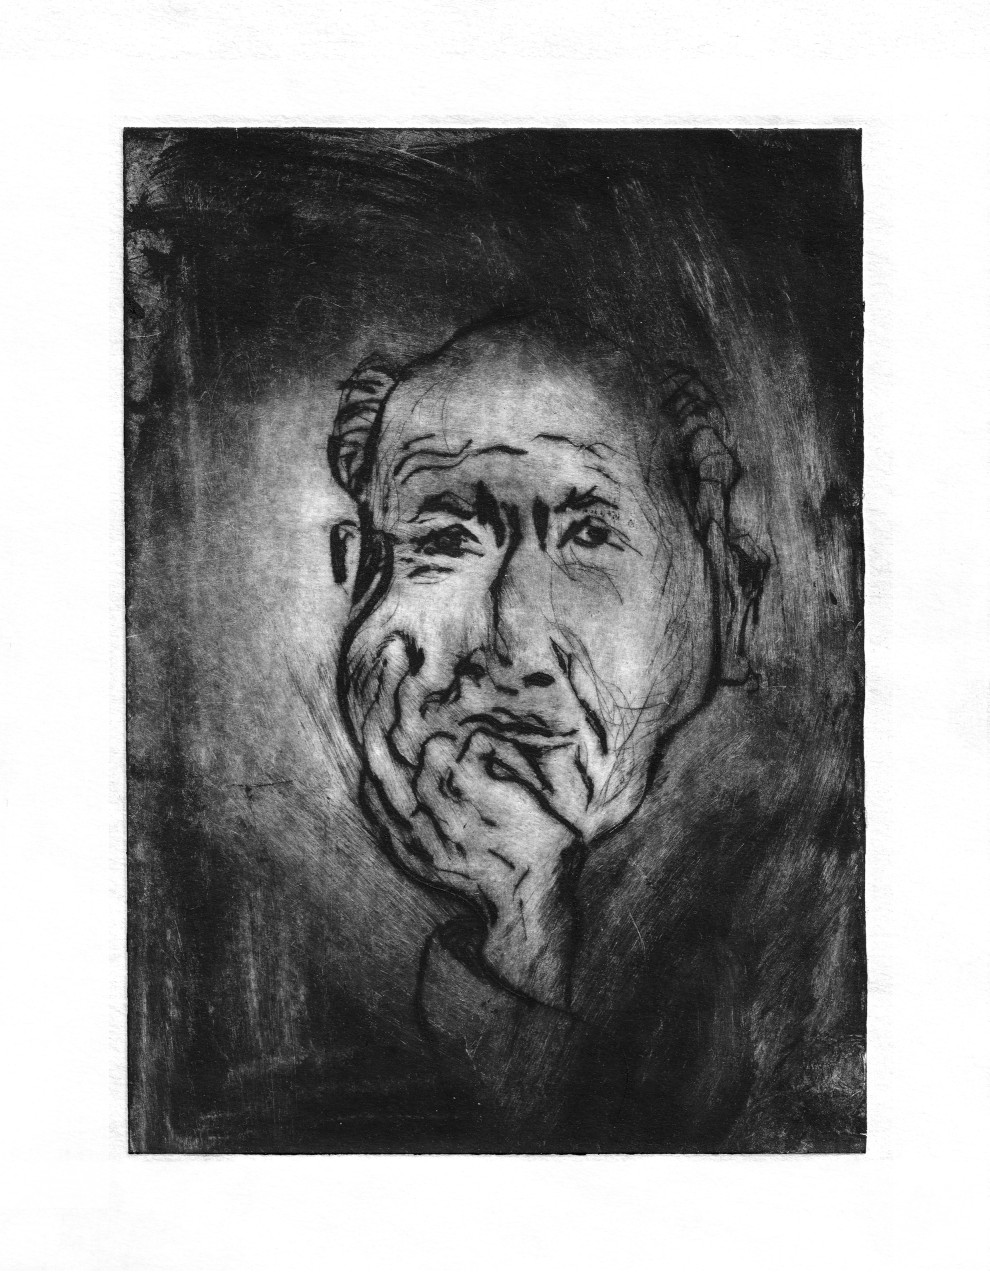 Иллюстрация "Манилов" к произведению Н.В. Гоголя "Мертвые души"